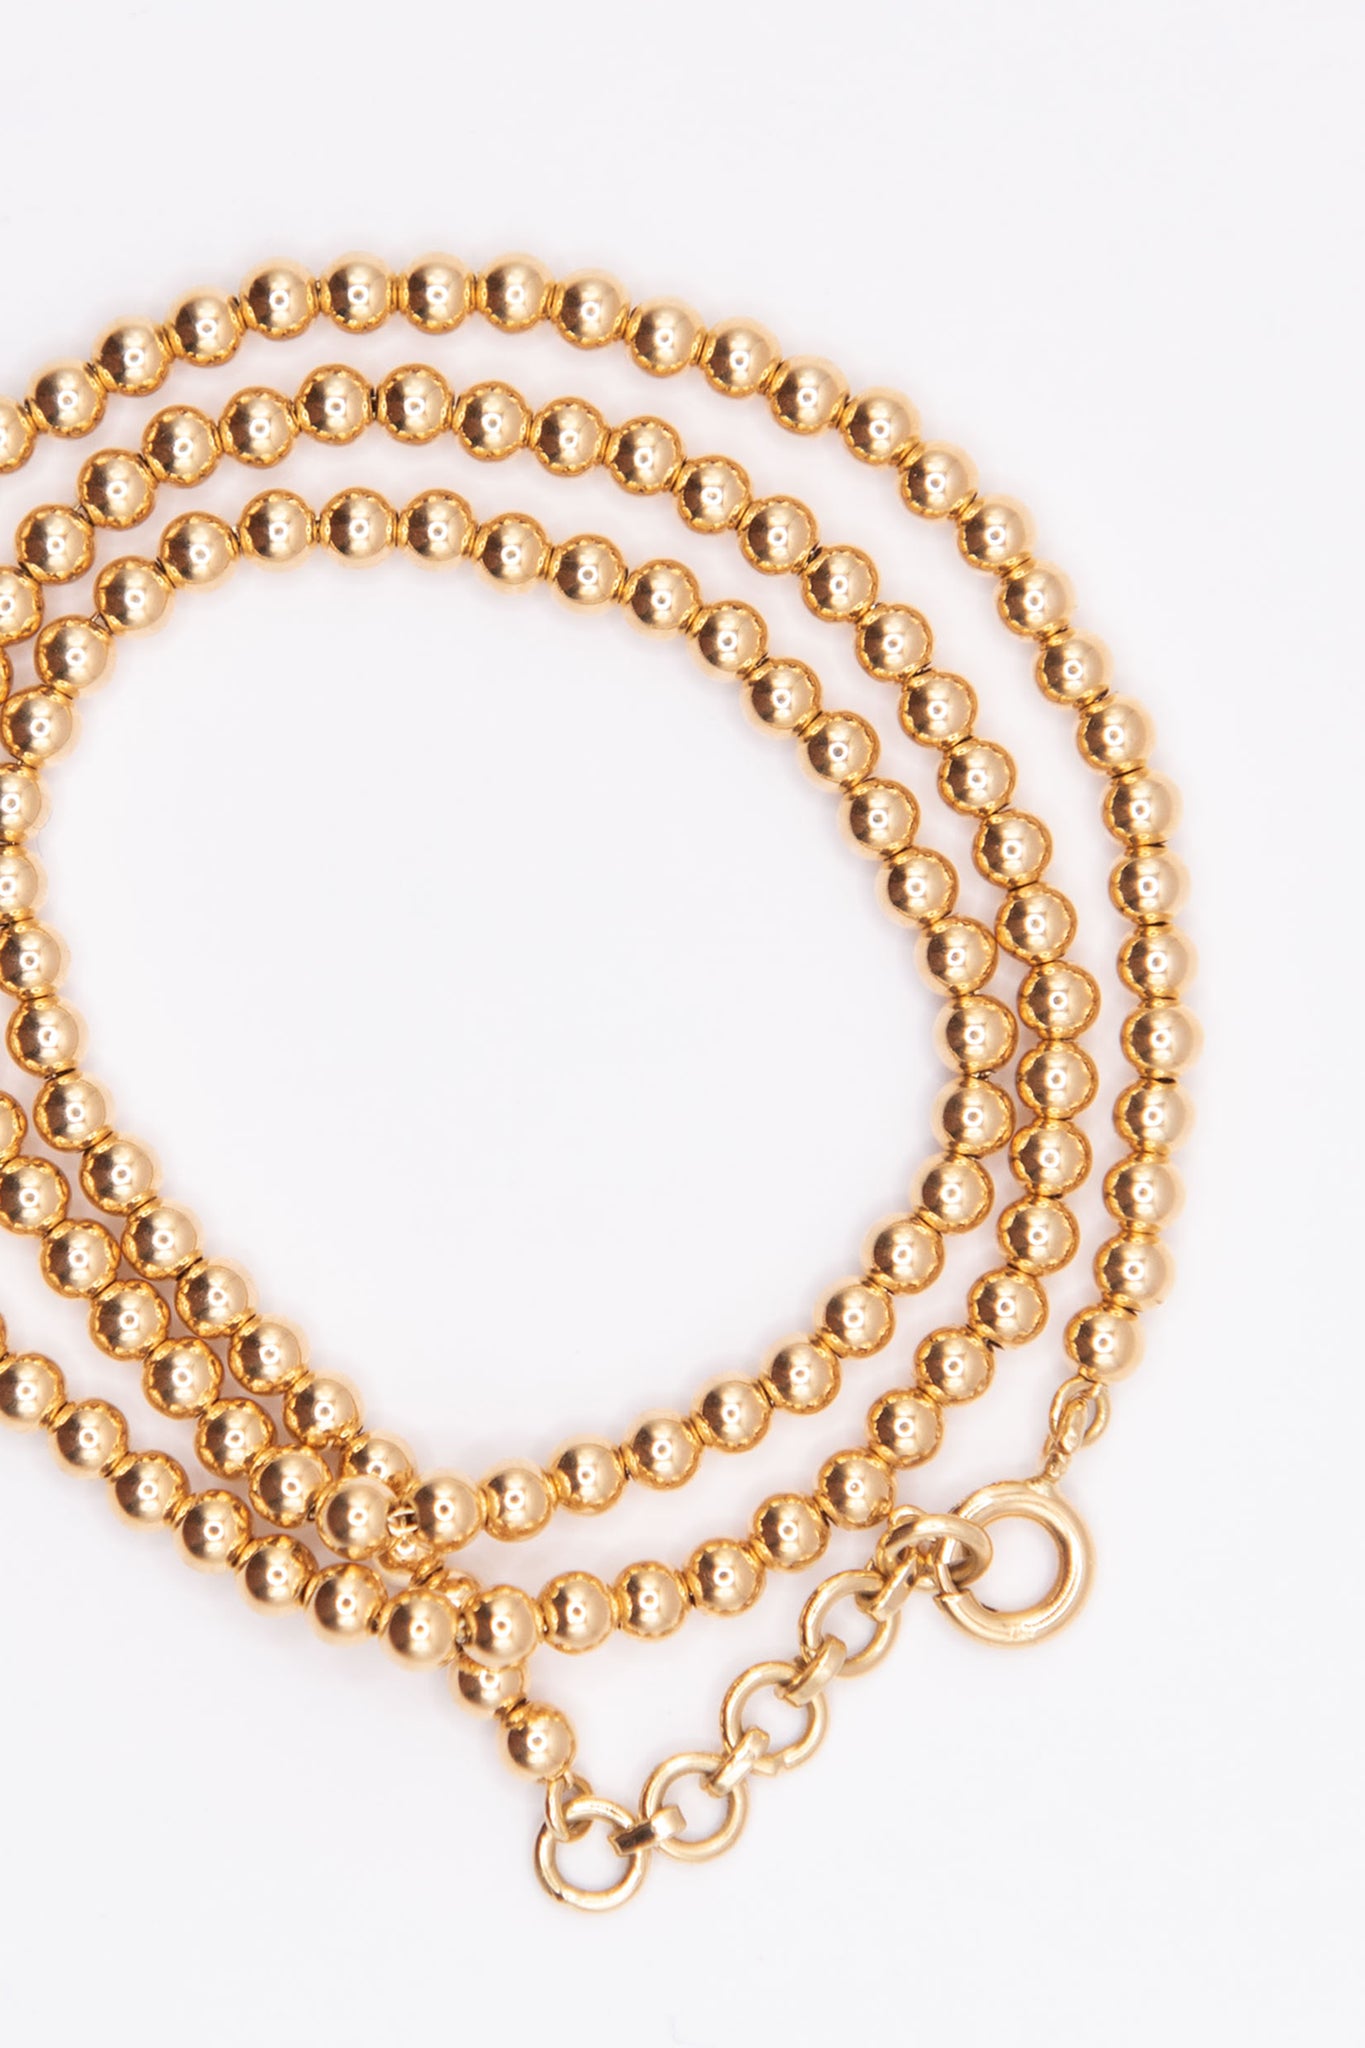 JOANNA DAHDAH - 3mm Beads Necklace, Yellow Gold